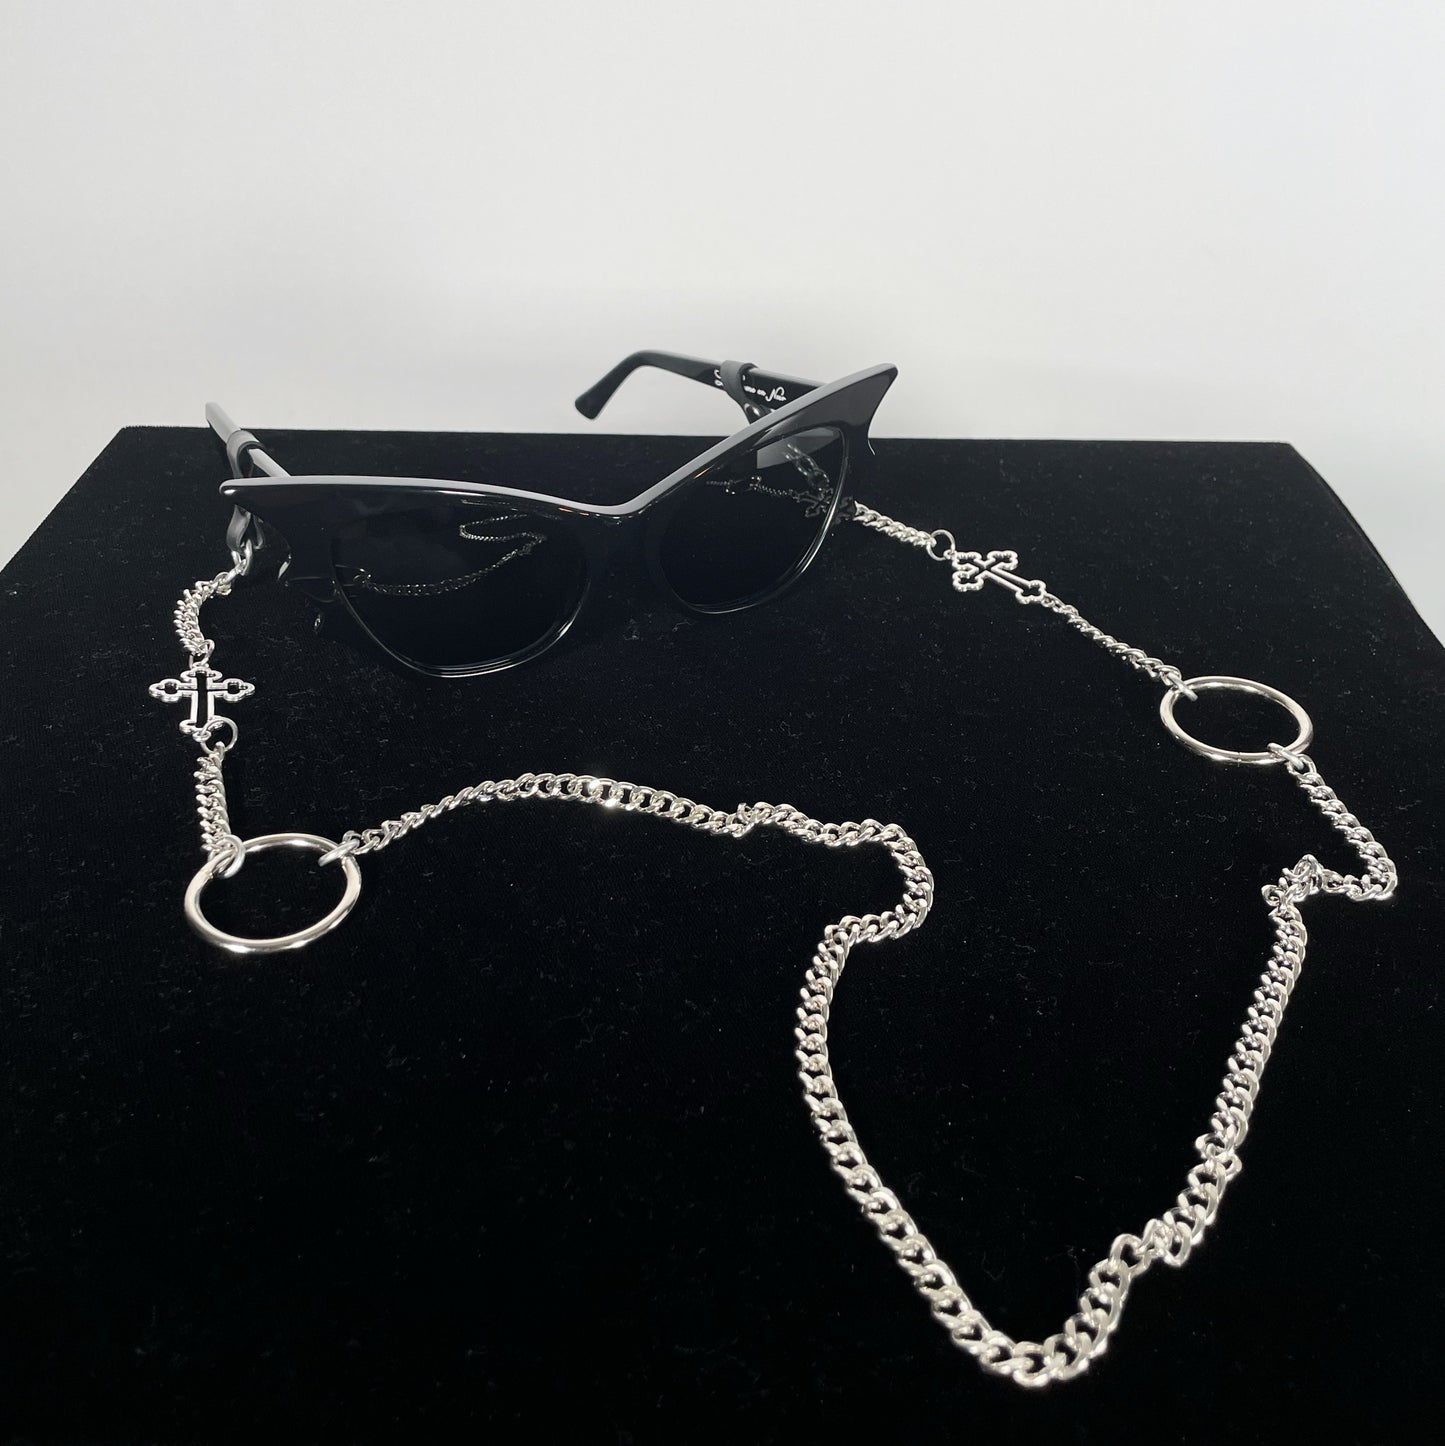 Original Sin Eyeglass Necklace Chain